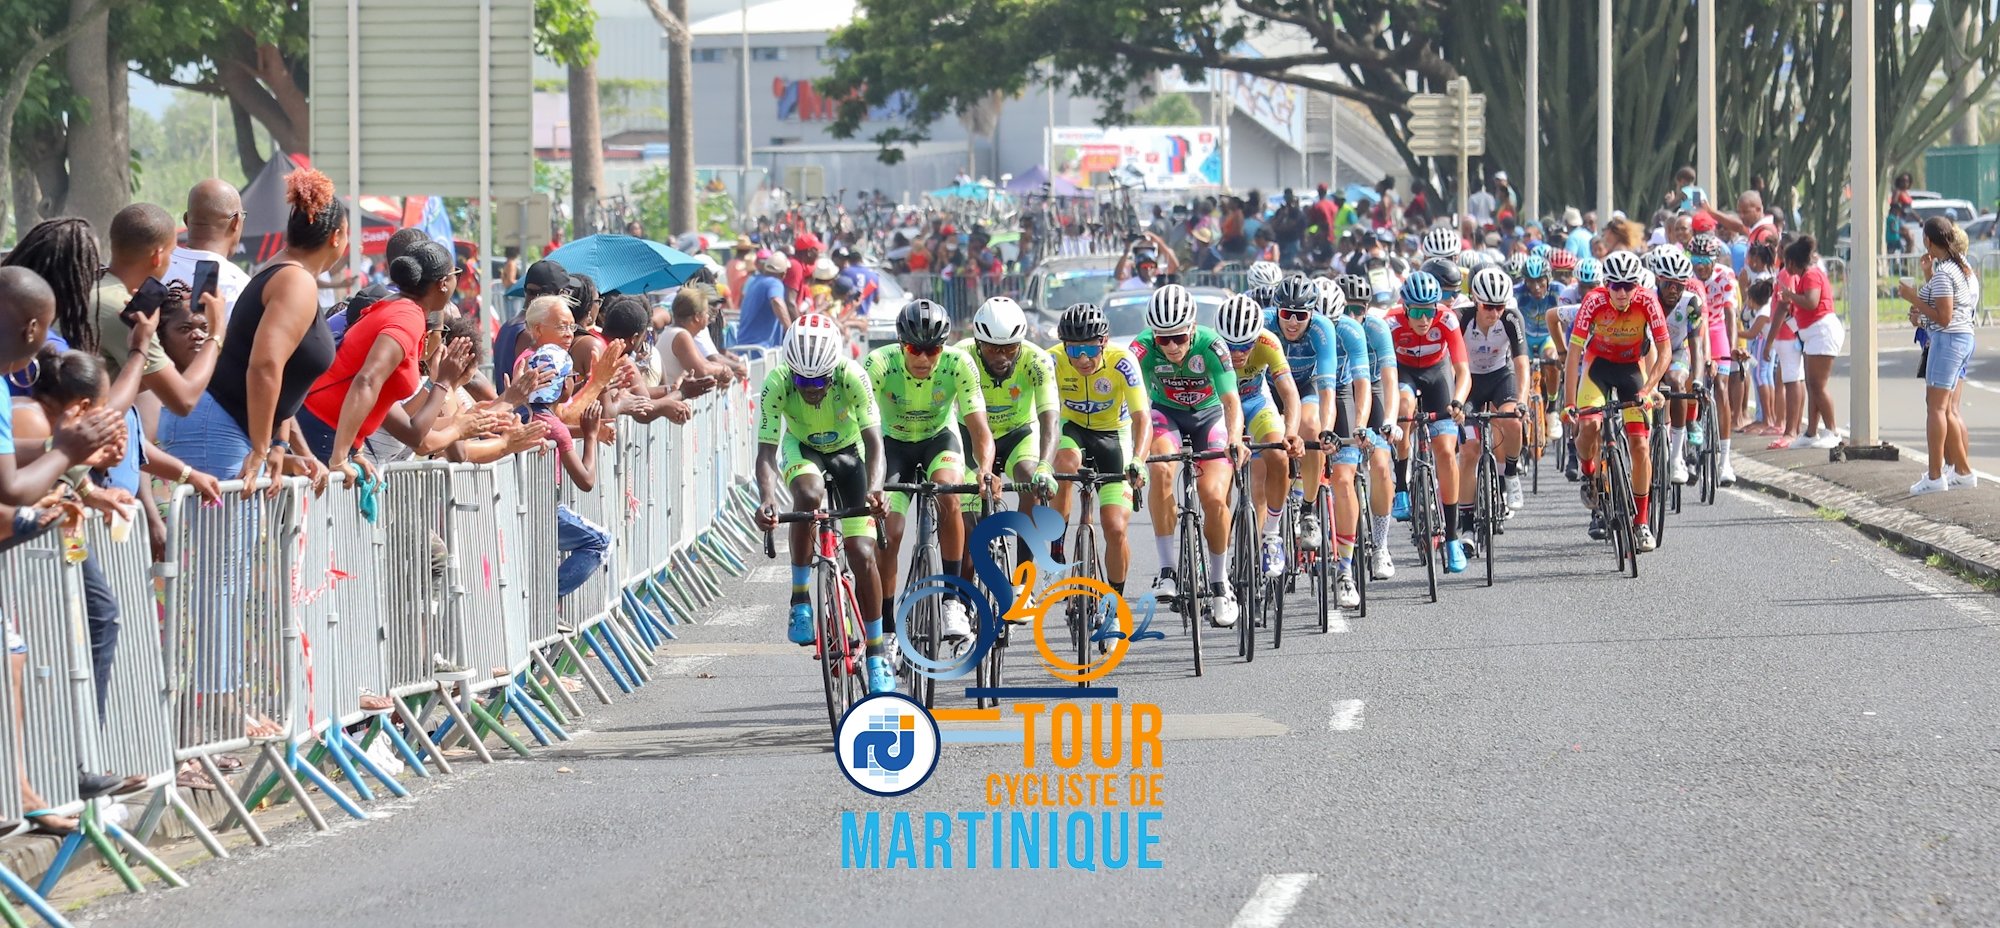     Tour cycliste de Martinique : les coureurs colombiens fixés ce vendredi

